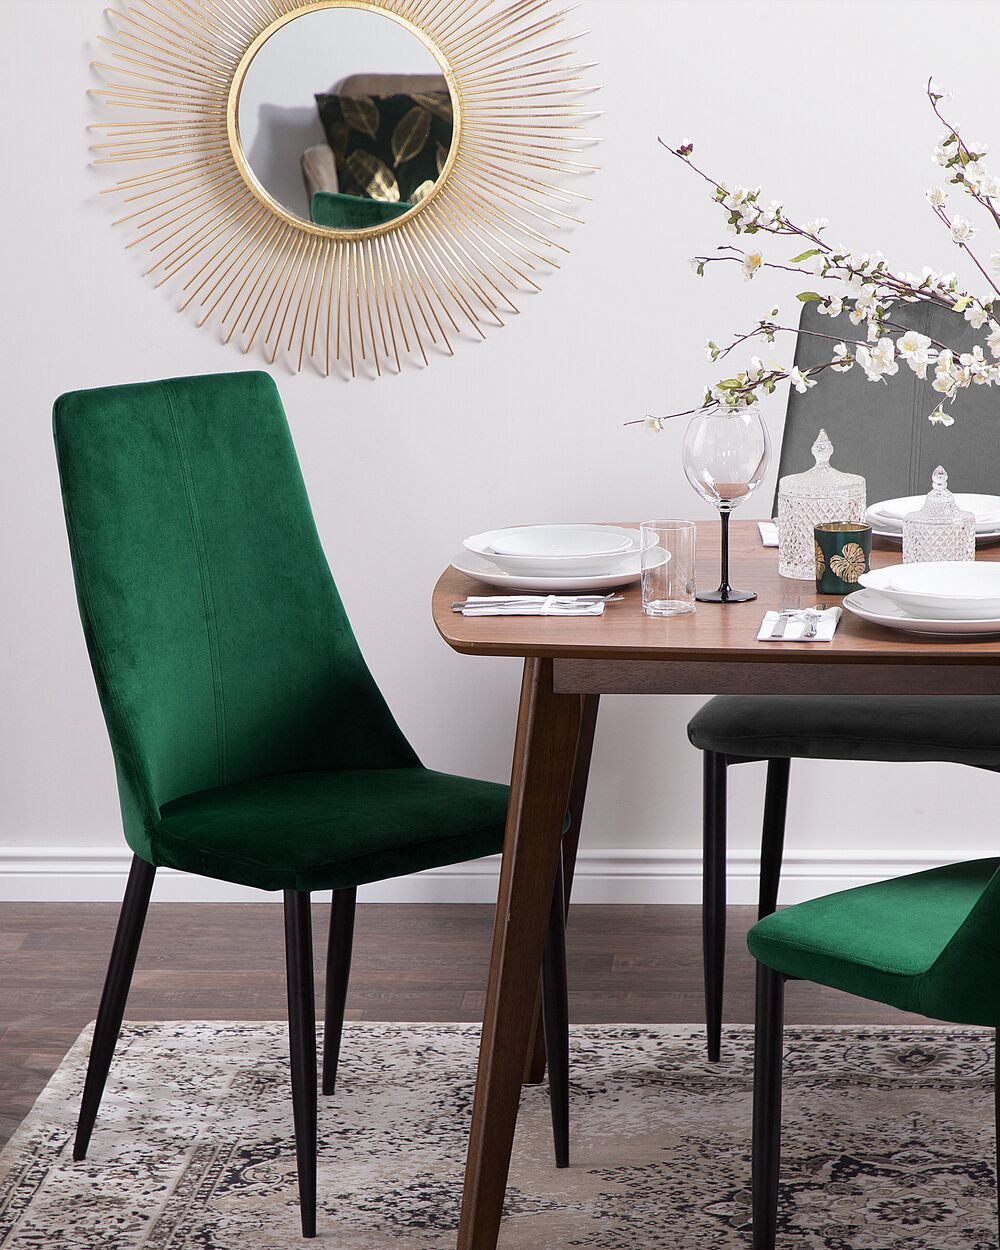 Sedie moderne per sala da pranzo: quale modello scegliere?